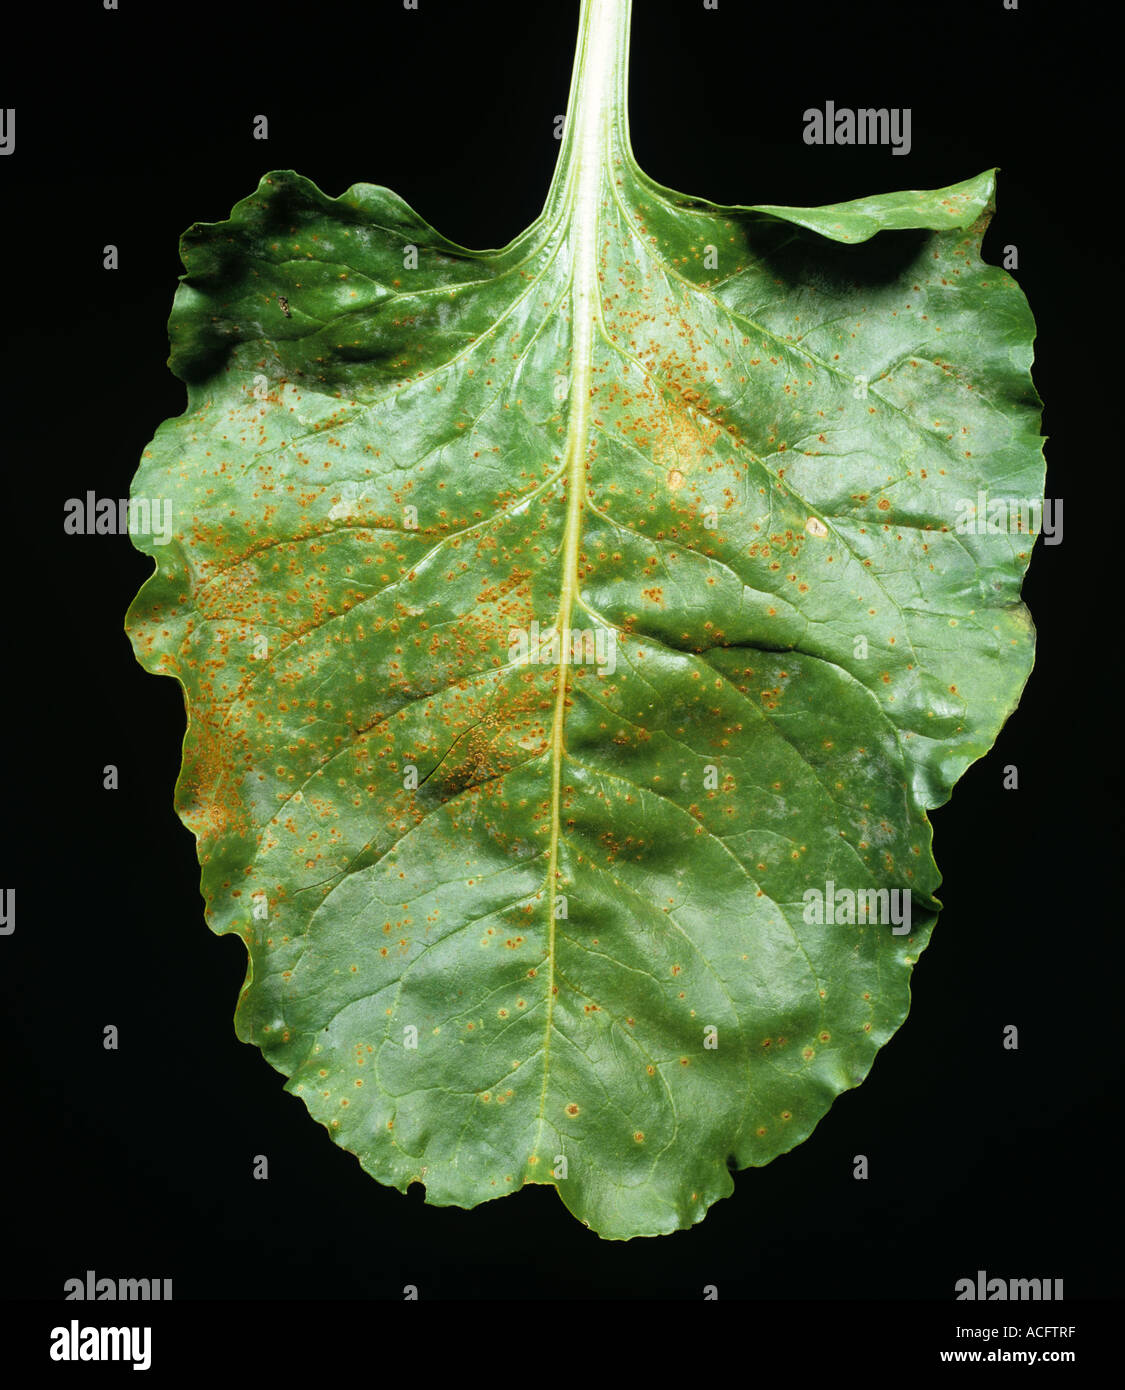 Sugar beet rust Uromyces betae pustules on a sugar beet leaf Stock Photo